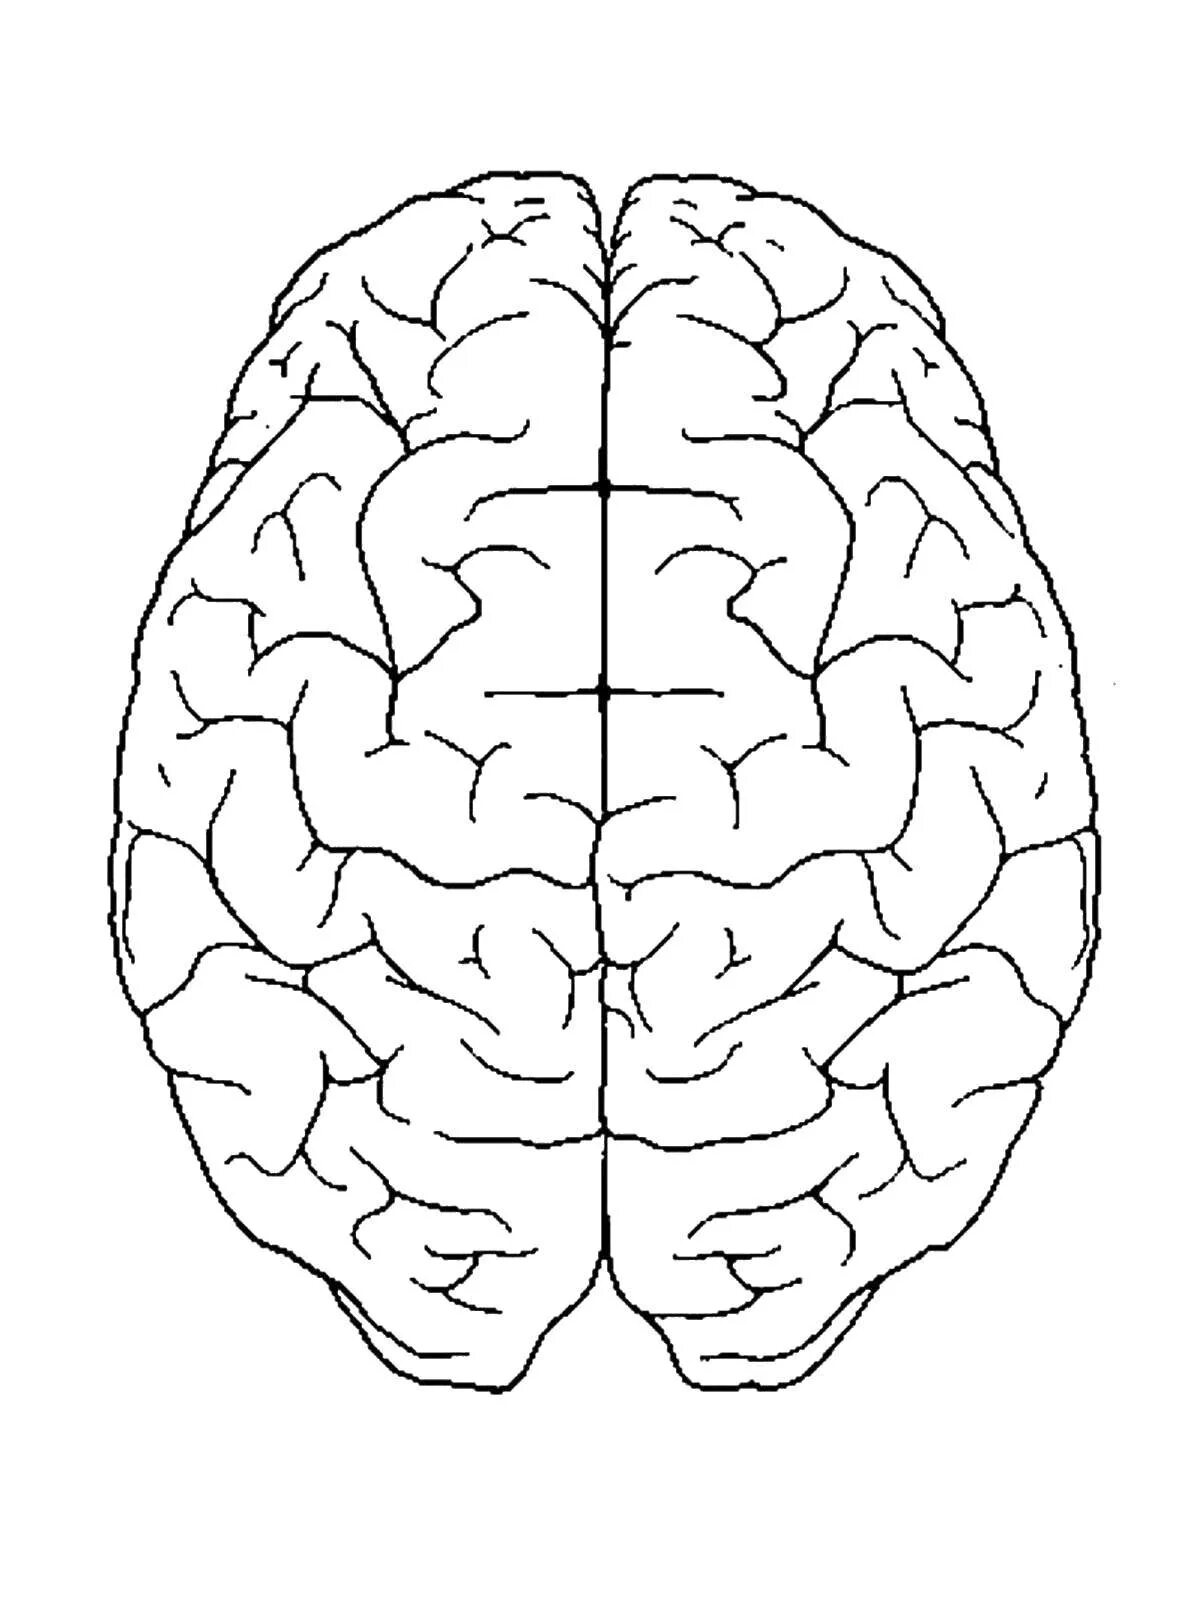 Мозг раскраска. Мозг человека раскраска. Головной мозг раскраска. Малые полушария